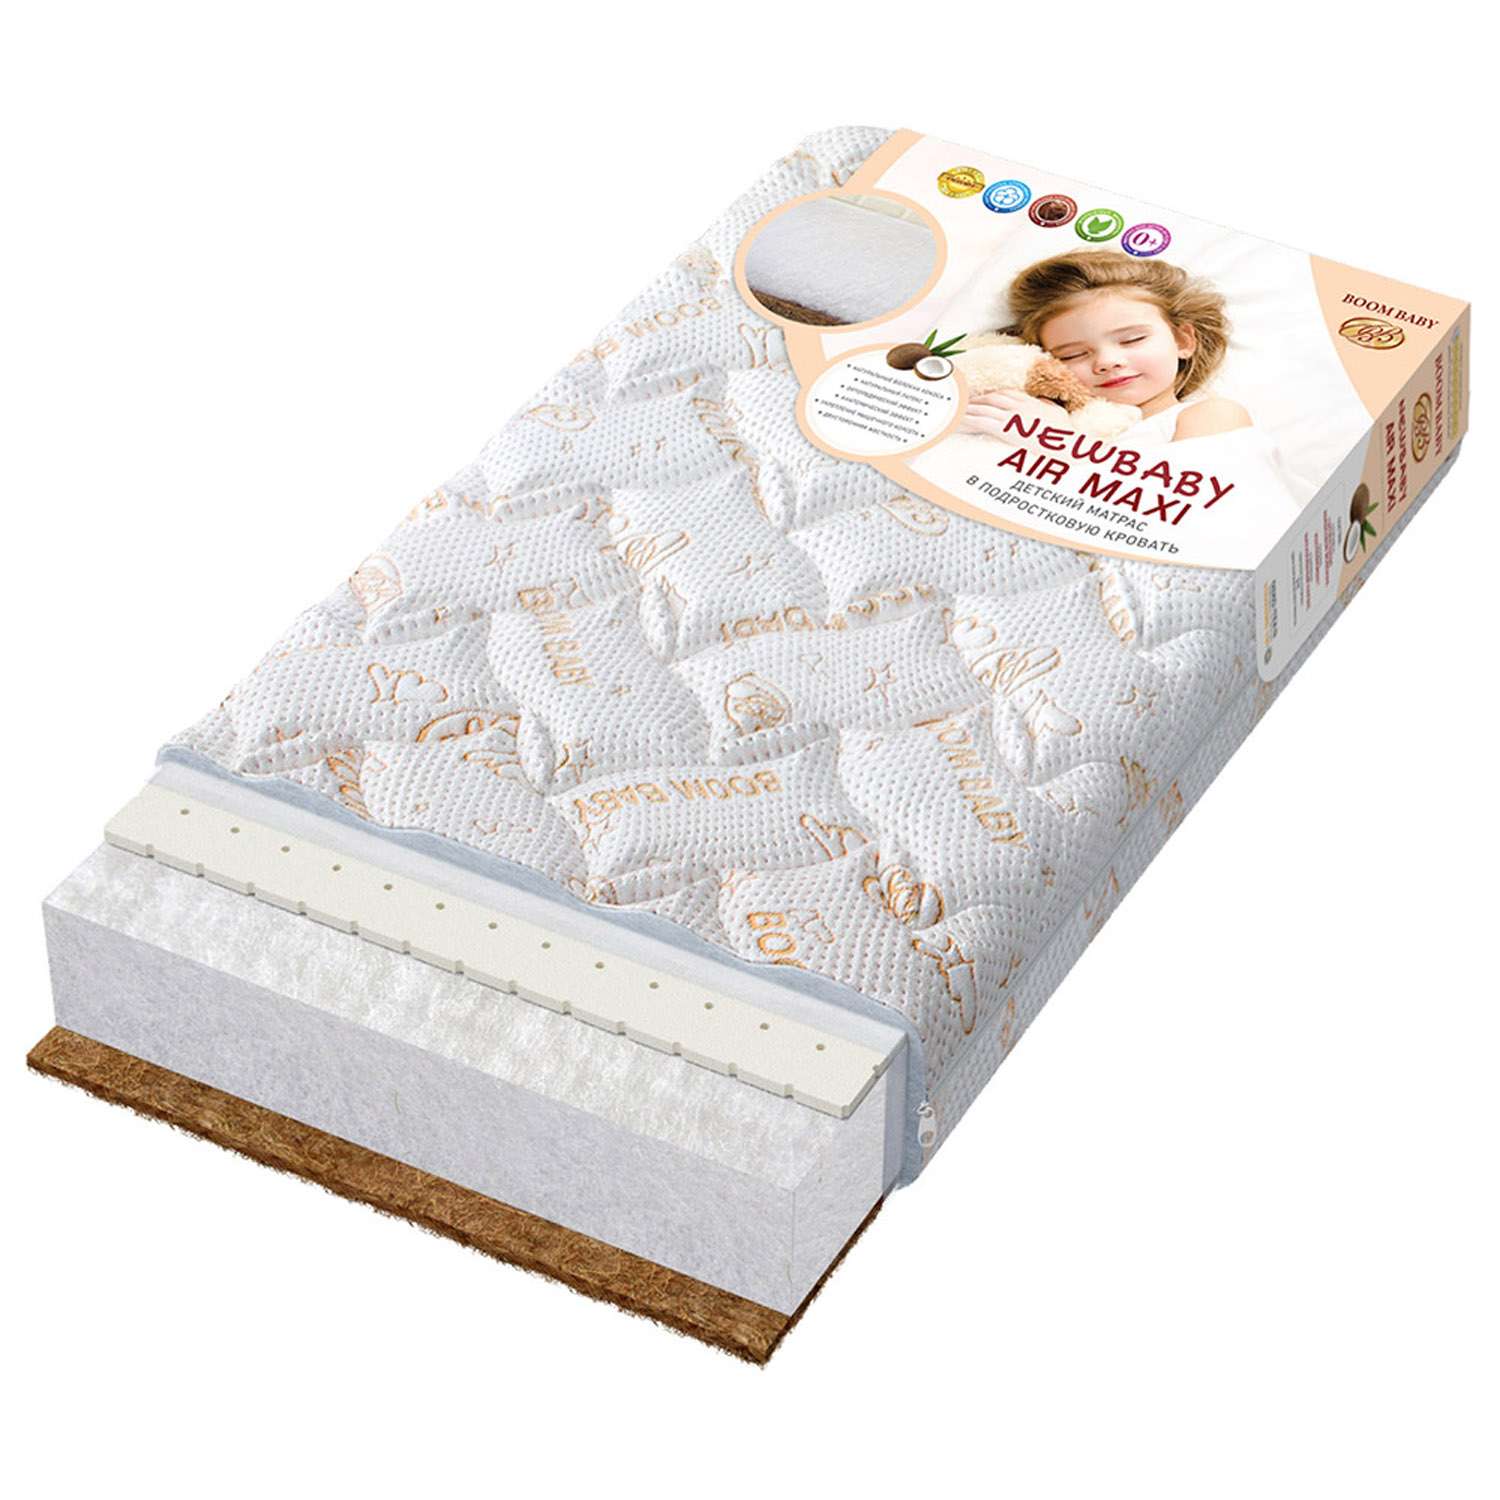 Матрас NВ AiR Maxi 140х70 см BOOM BABY для детской кроватки - фото 1